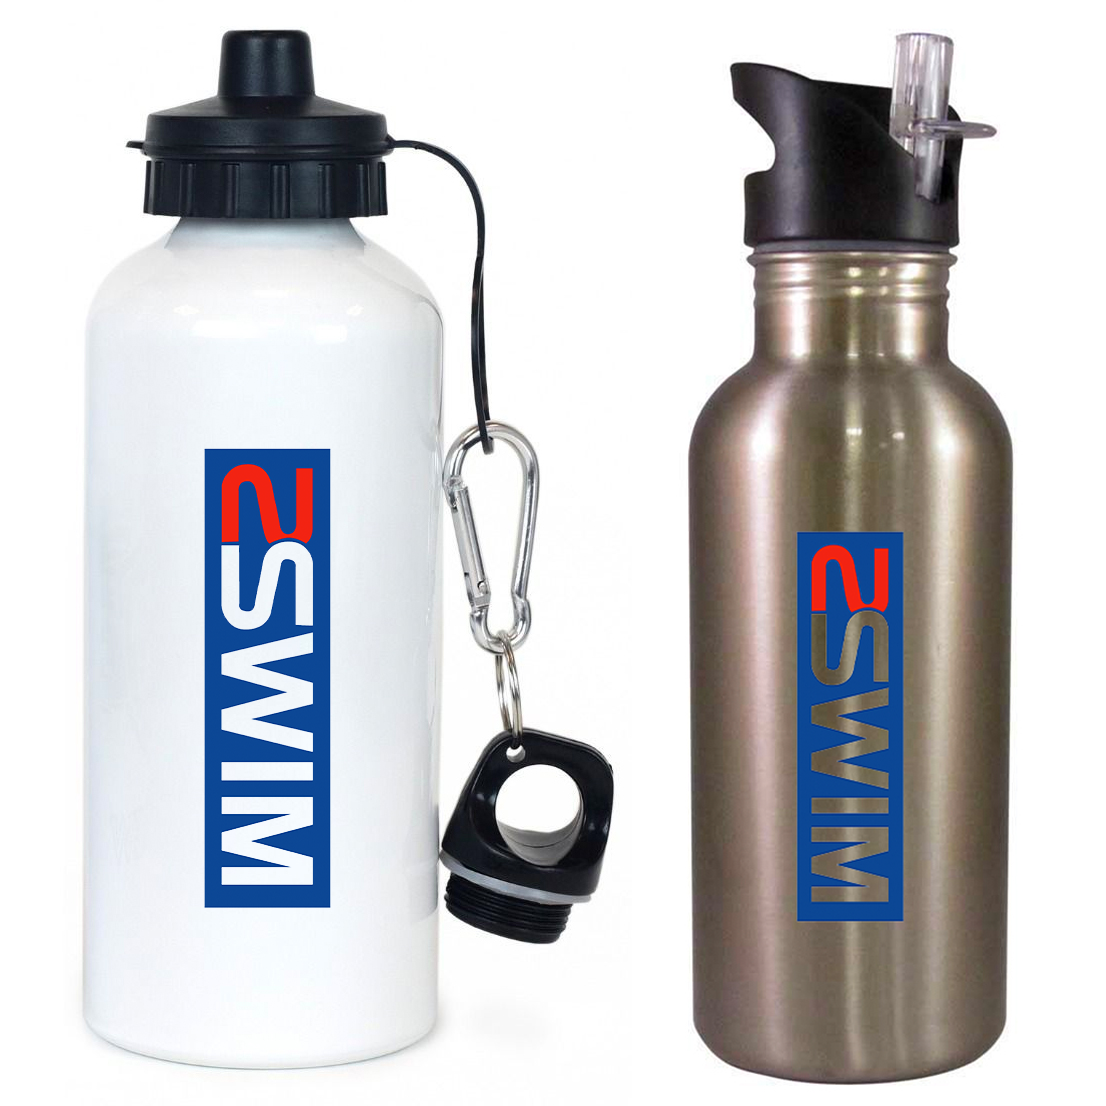 Skudin Swim Team Water Bottle